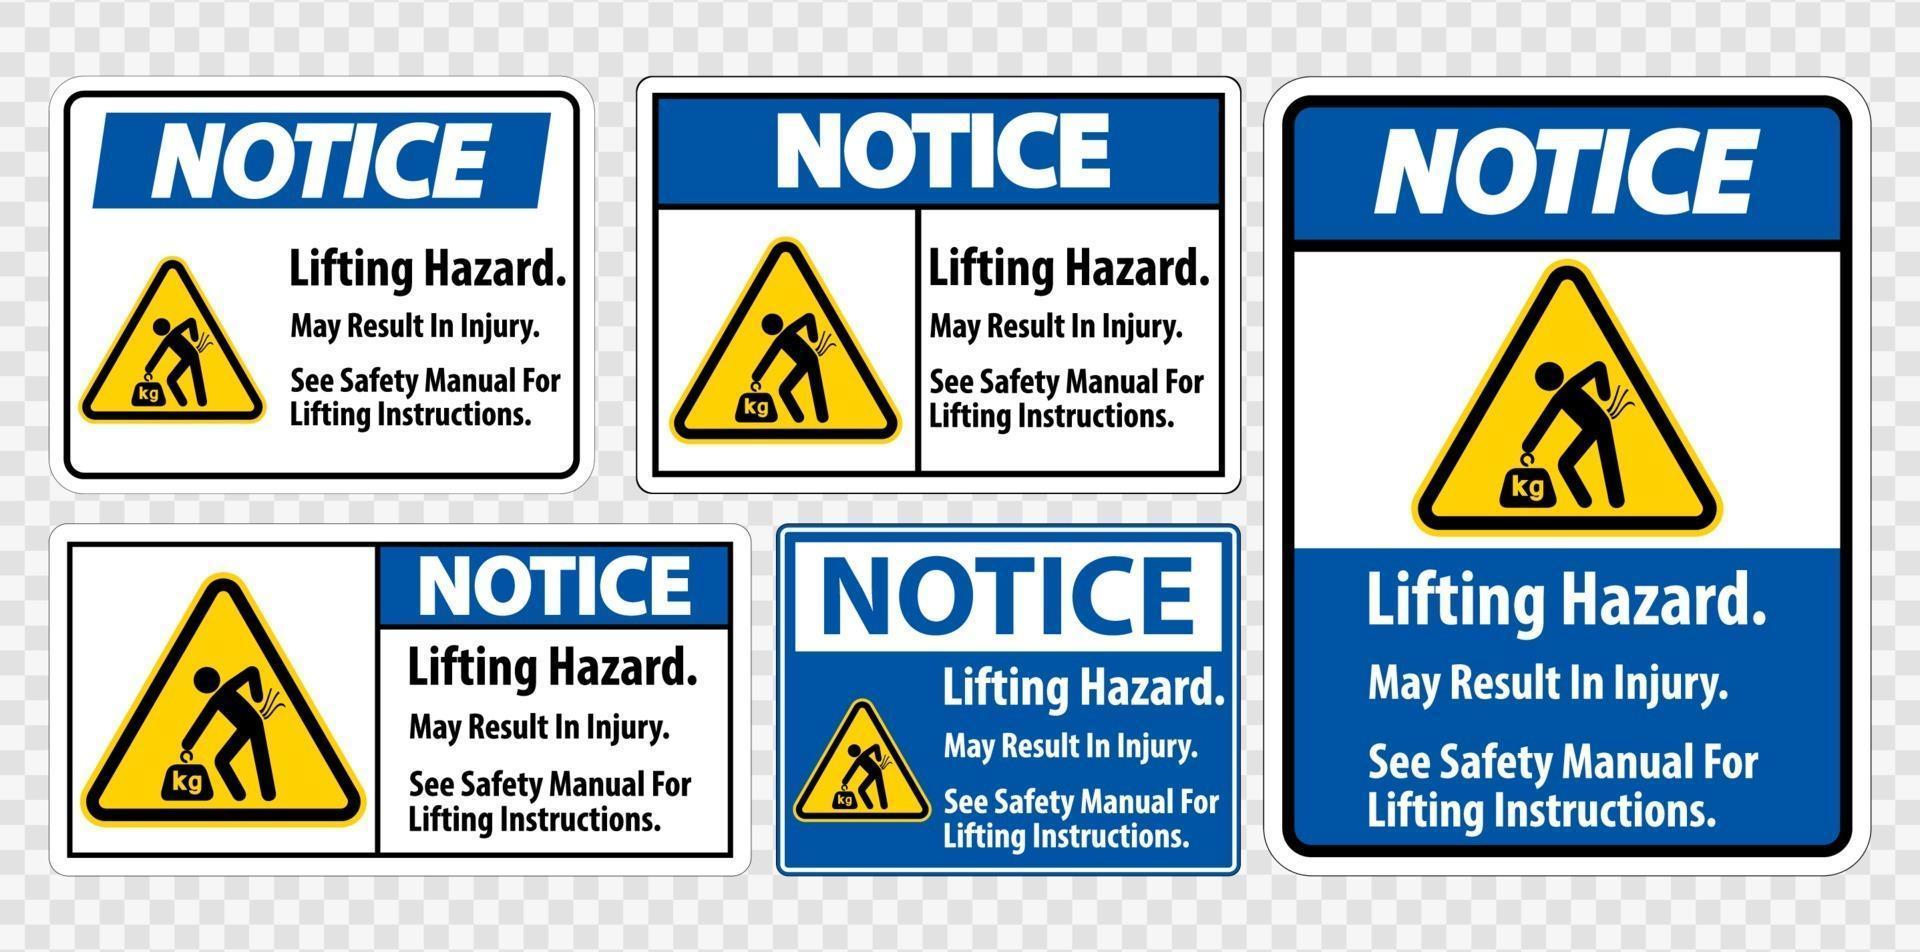 El peligro de elevación puede provocar lesiones; consulte el manual de seguridad para obtener instrucciones sobre el símbolo vector